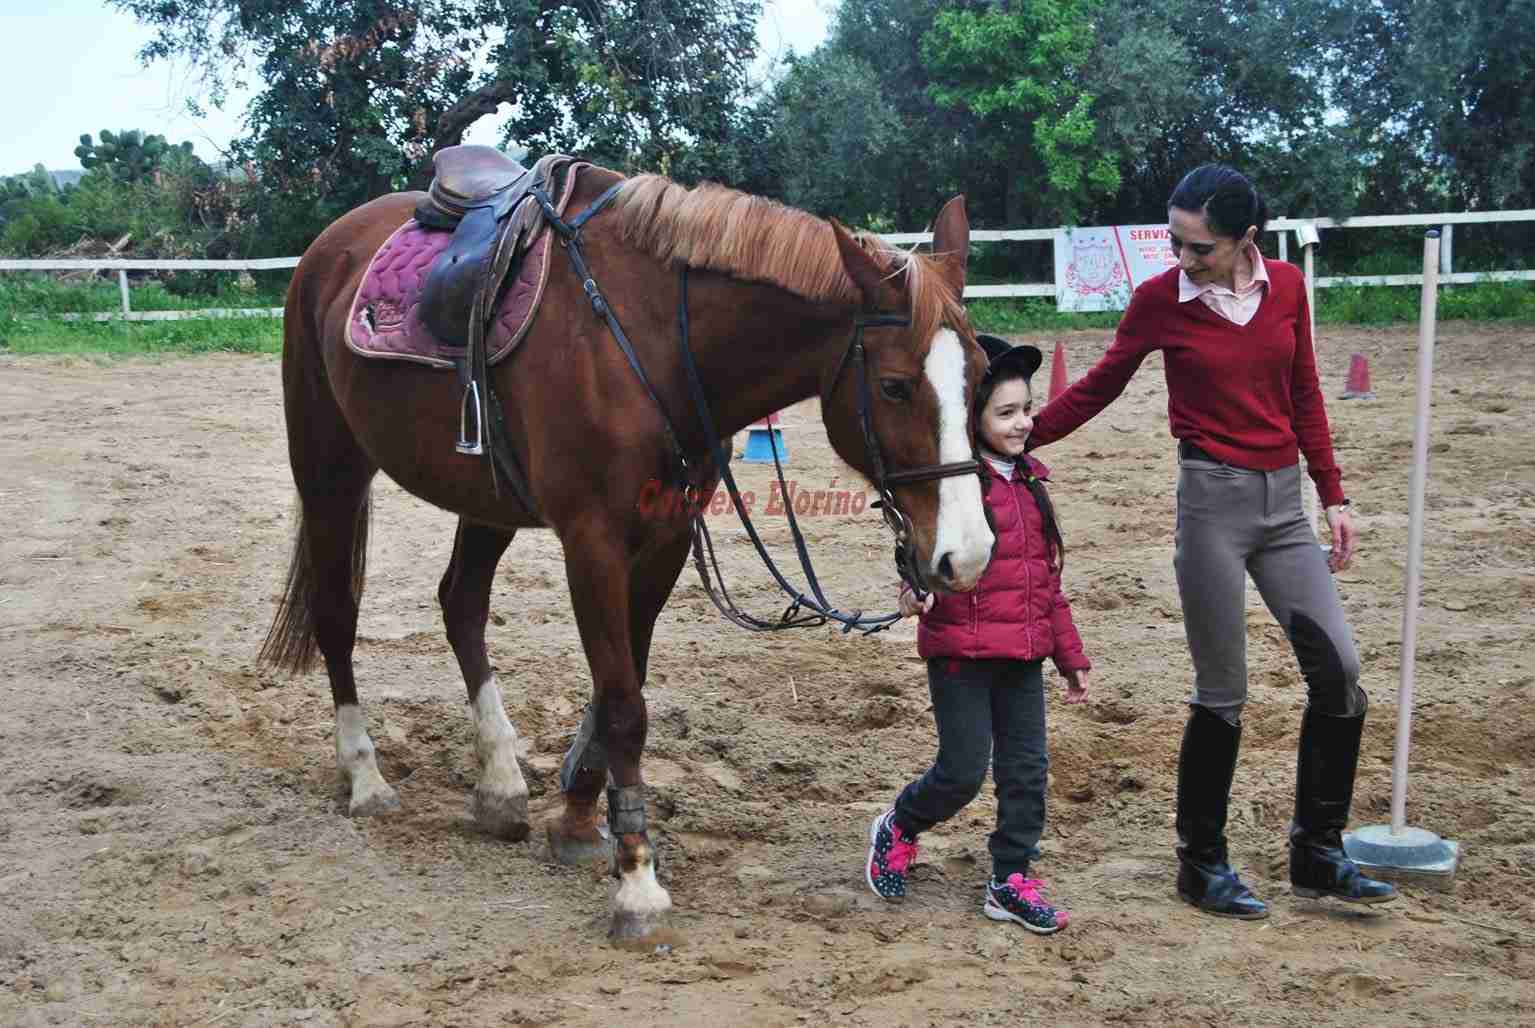 Equitazione integrata a “Il parco dei cavalieri”, un nuovo modo di vivere il cavallo